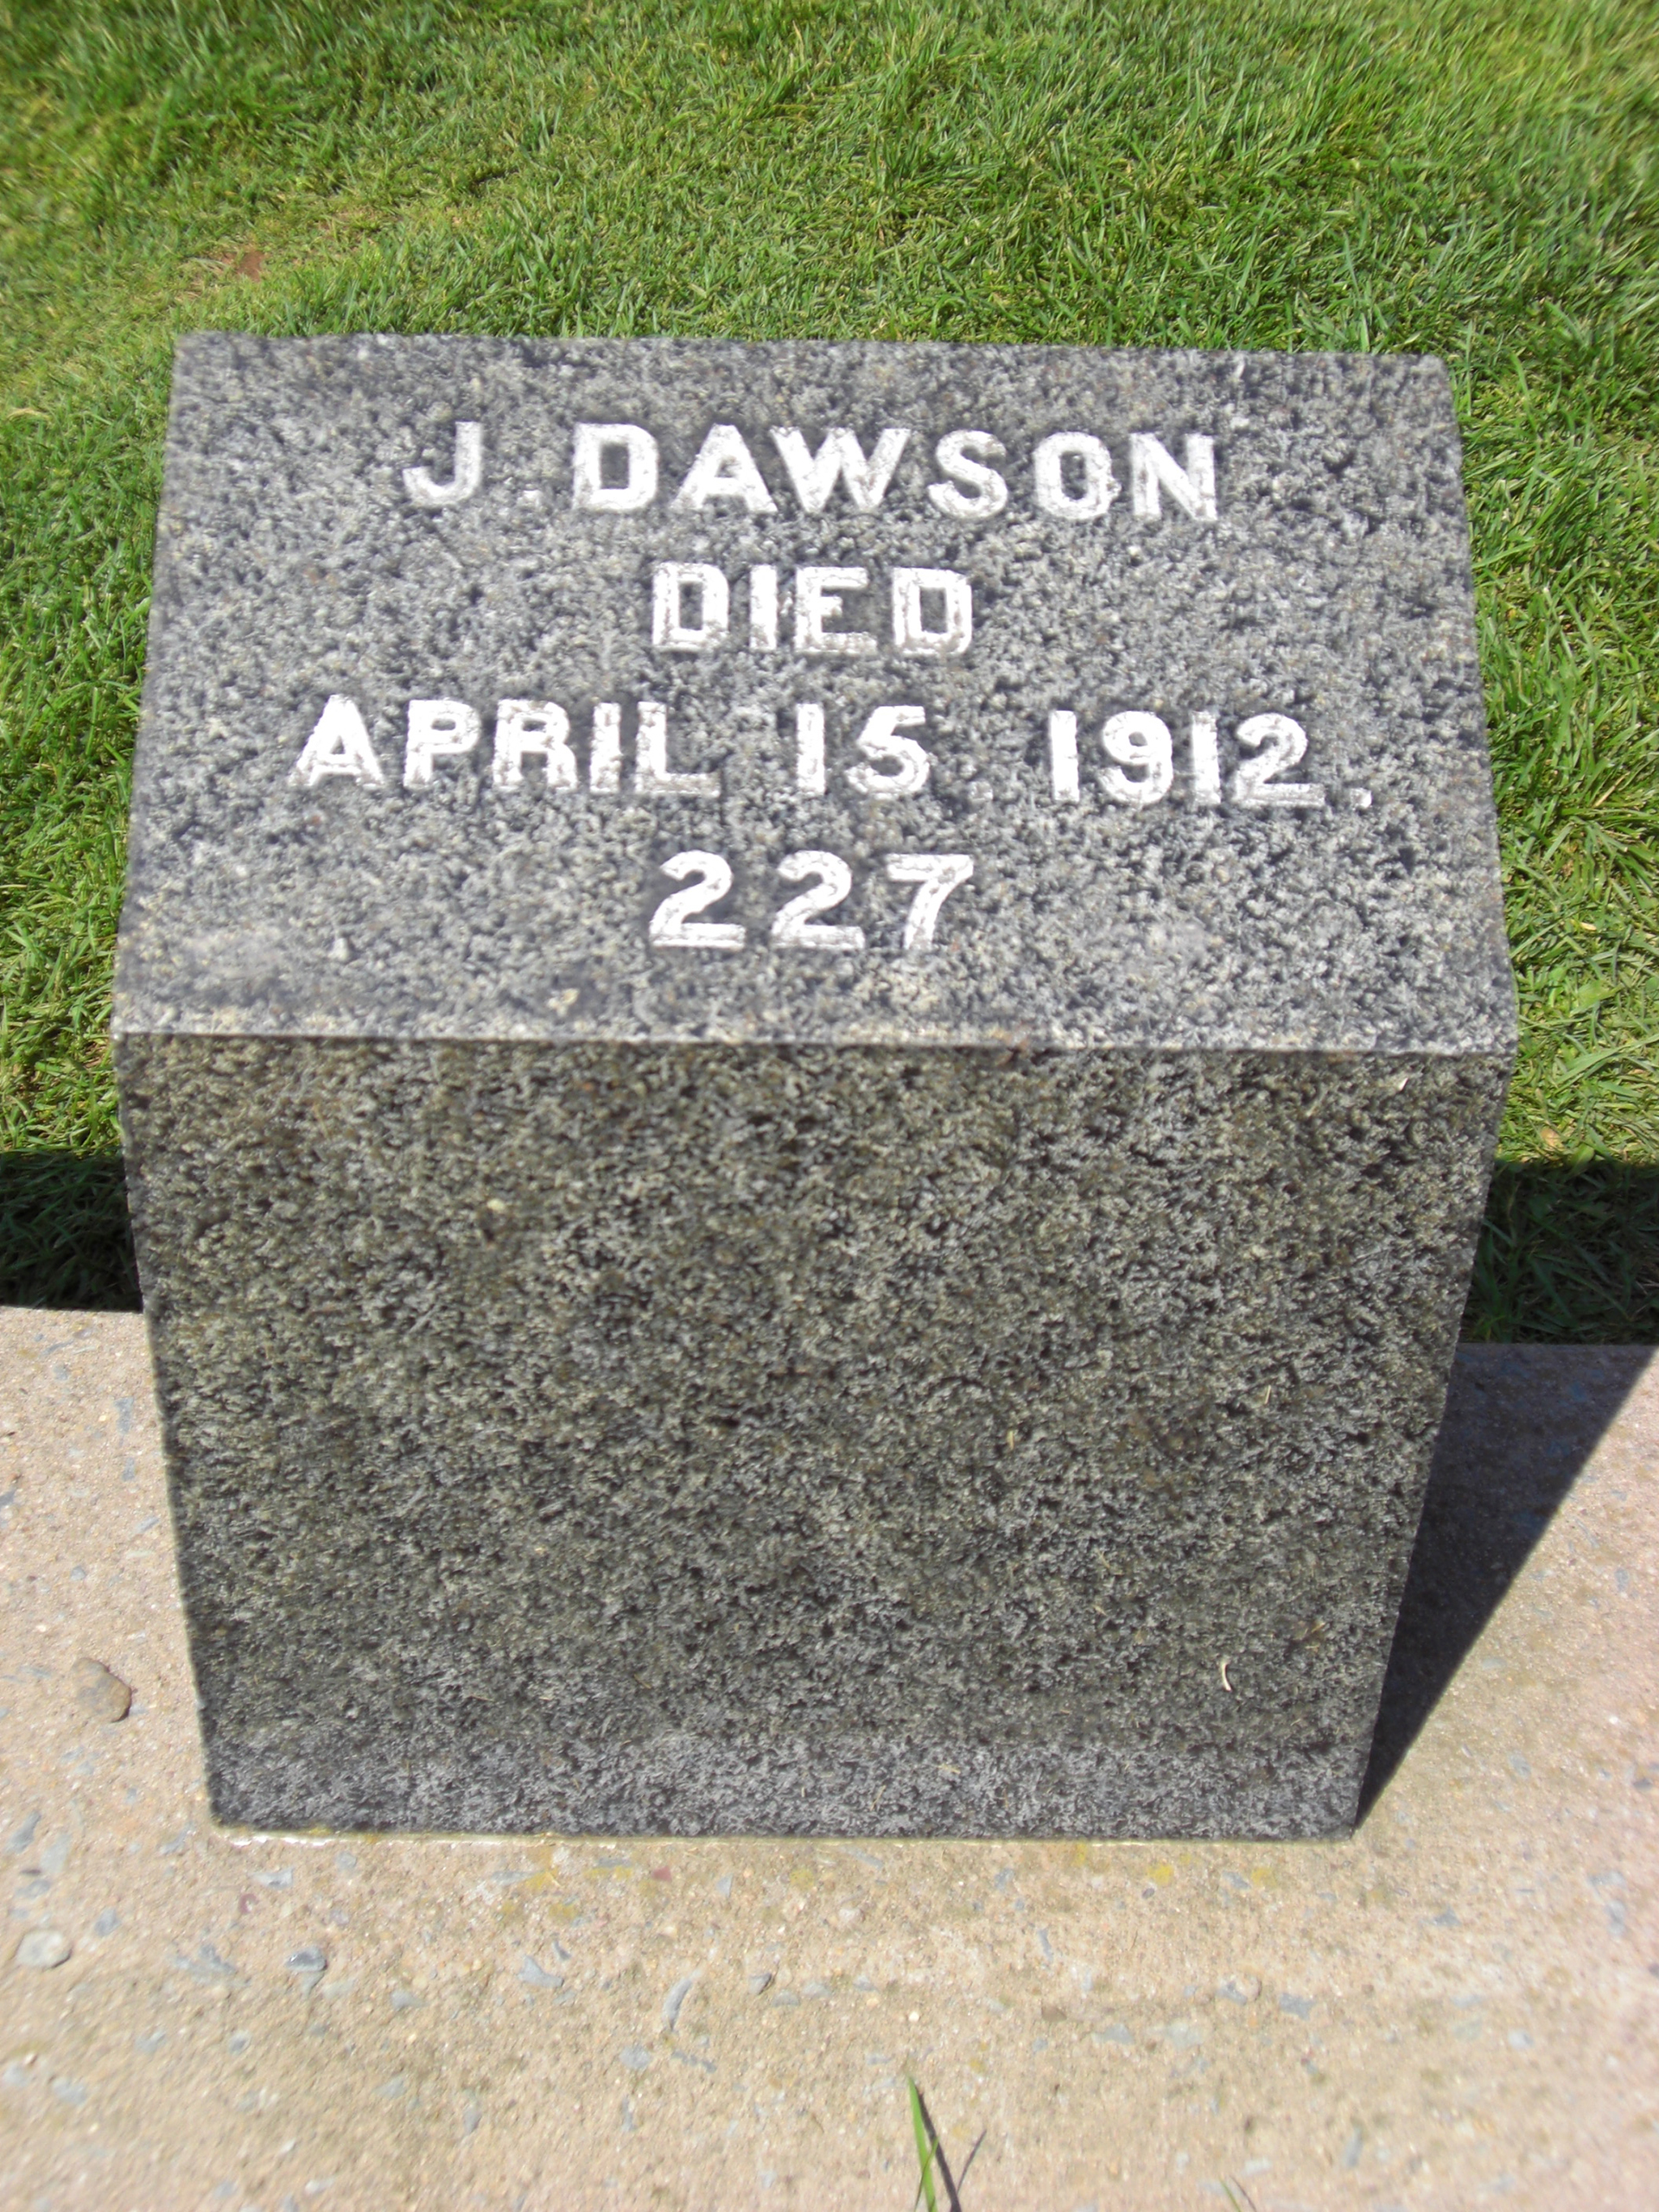 Dawson es una de las 121 personas que viajaban en el Titanic que se encuentran enterradas en el Cementerio Fairview Lawn en Halifax, Nueva Escocia. No son las únicas víctimas: su lápida lleva el 227 porque fue ése fue el número de cuerpo recuperado (Wikipedia)